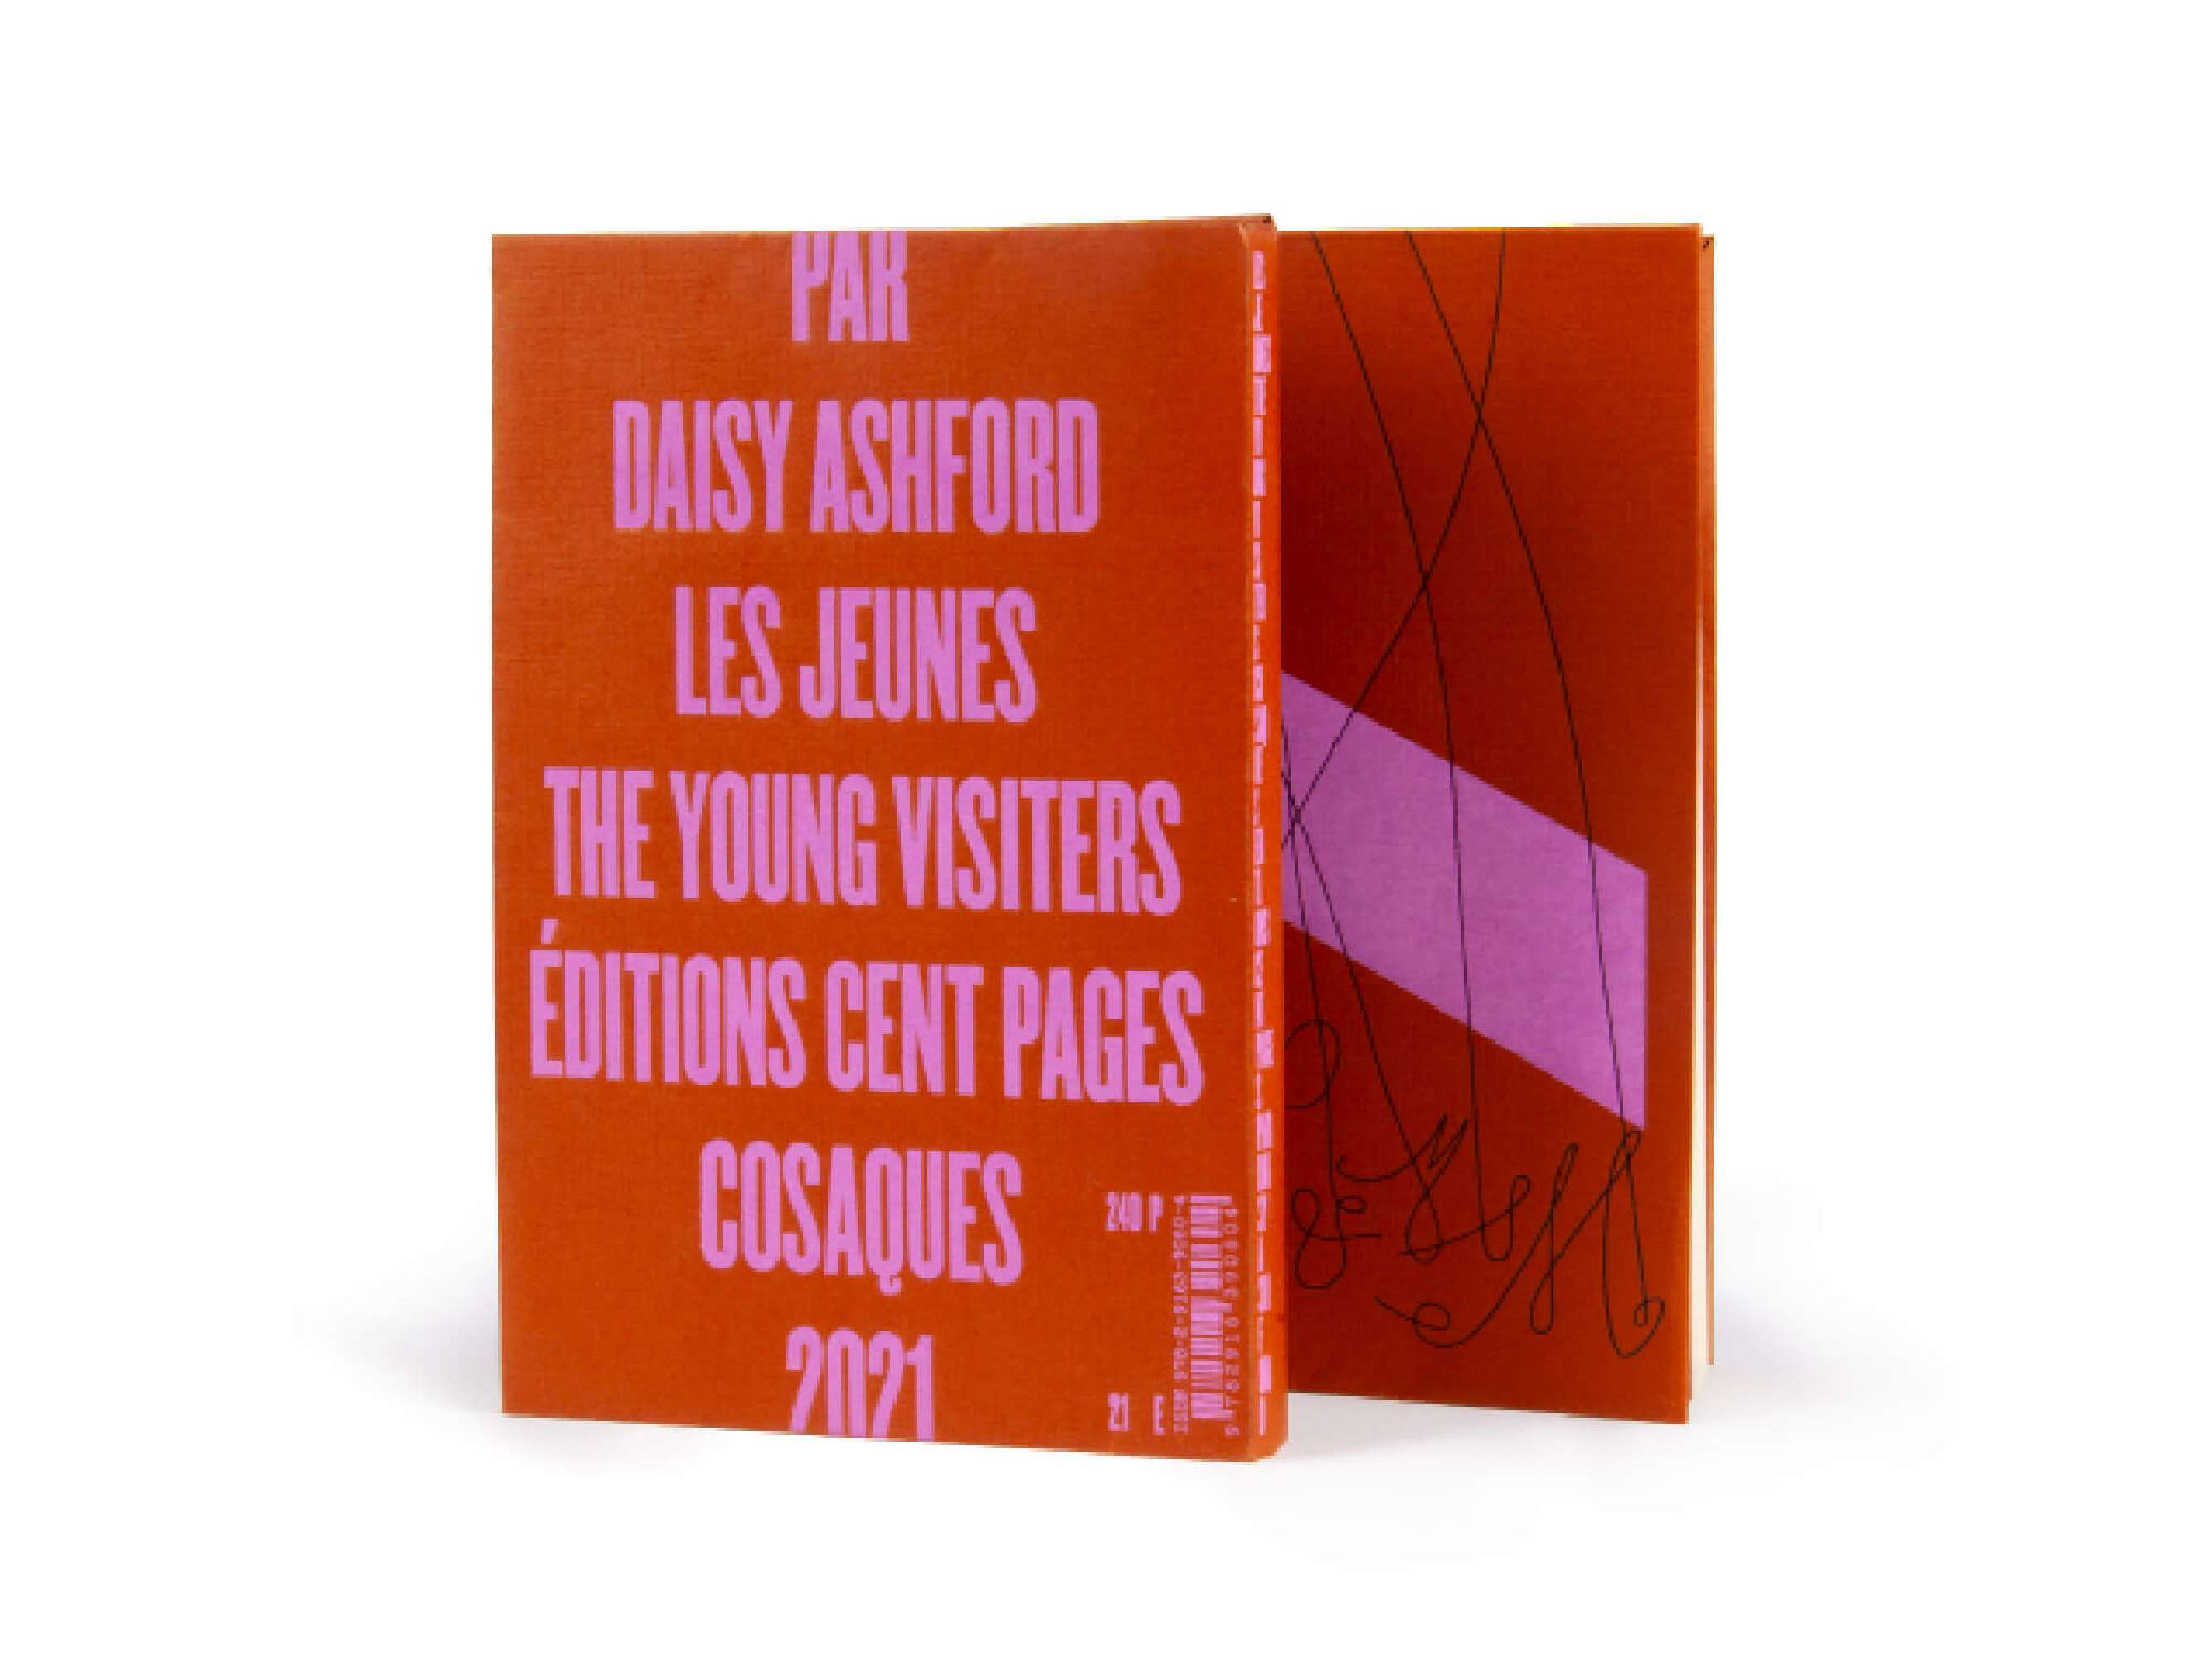 La couverture du carnet Daisy Ashford - Les jeunes visiteurs, de la collection les cent pages blanches des Éditions cent pages